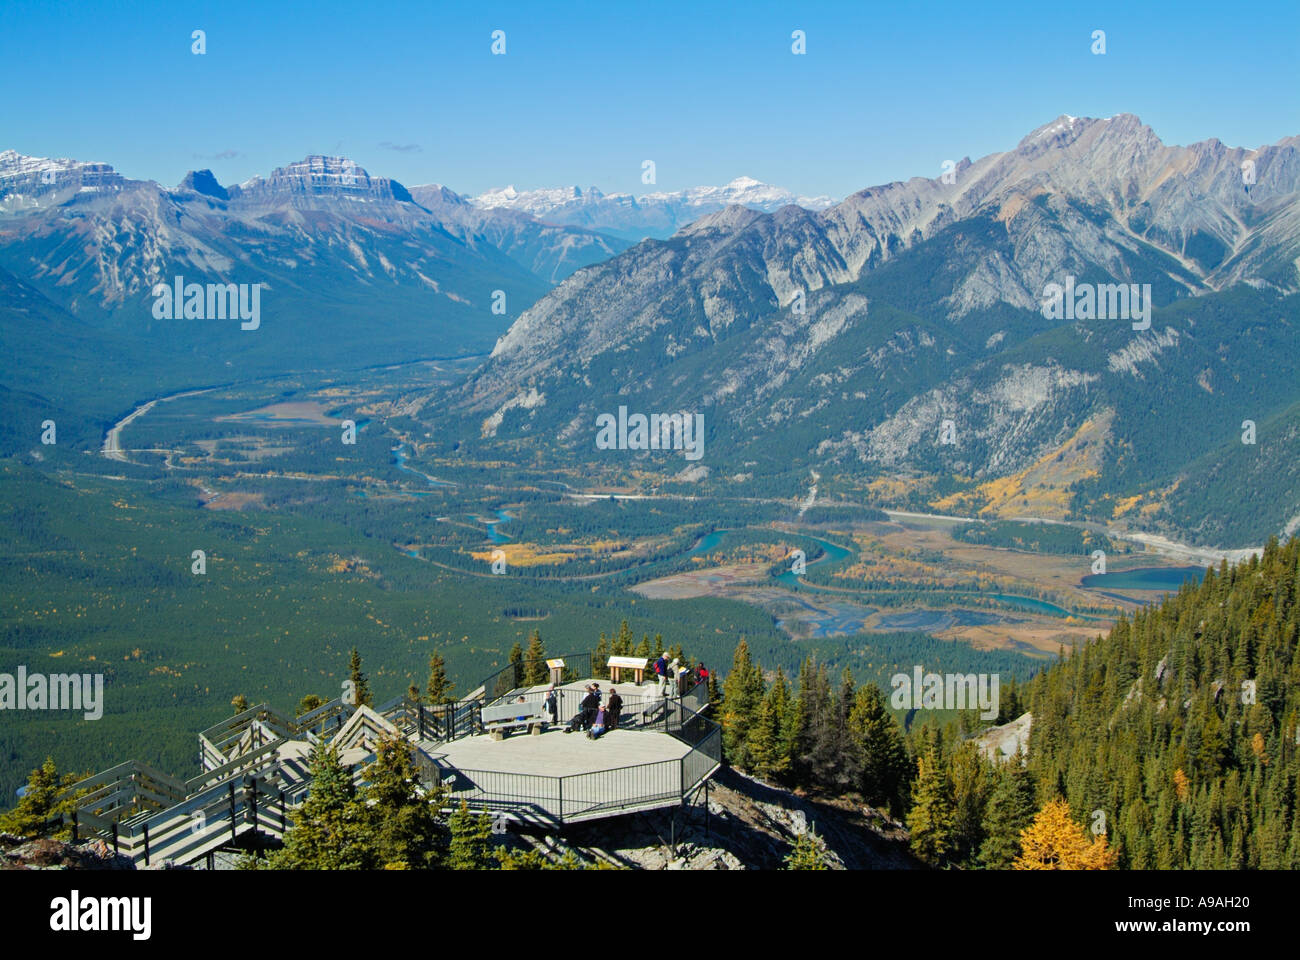 Plate-forme d'observation au sommet du mont Sulphur Banff National Park Alberta Canada Amérique du Nord Banque D'Images